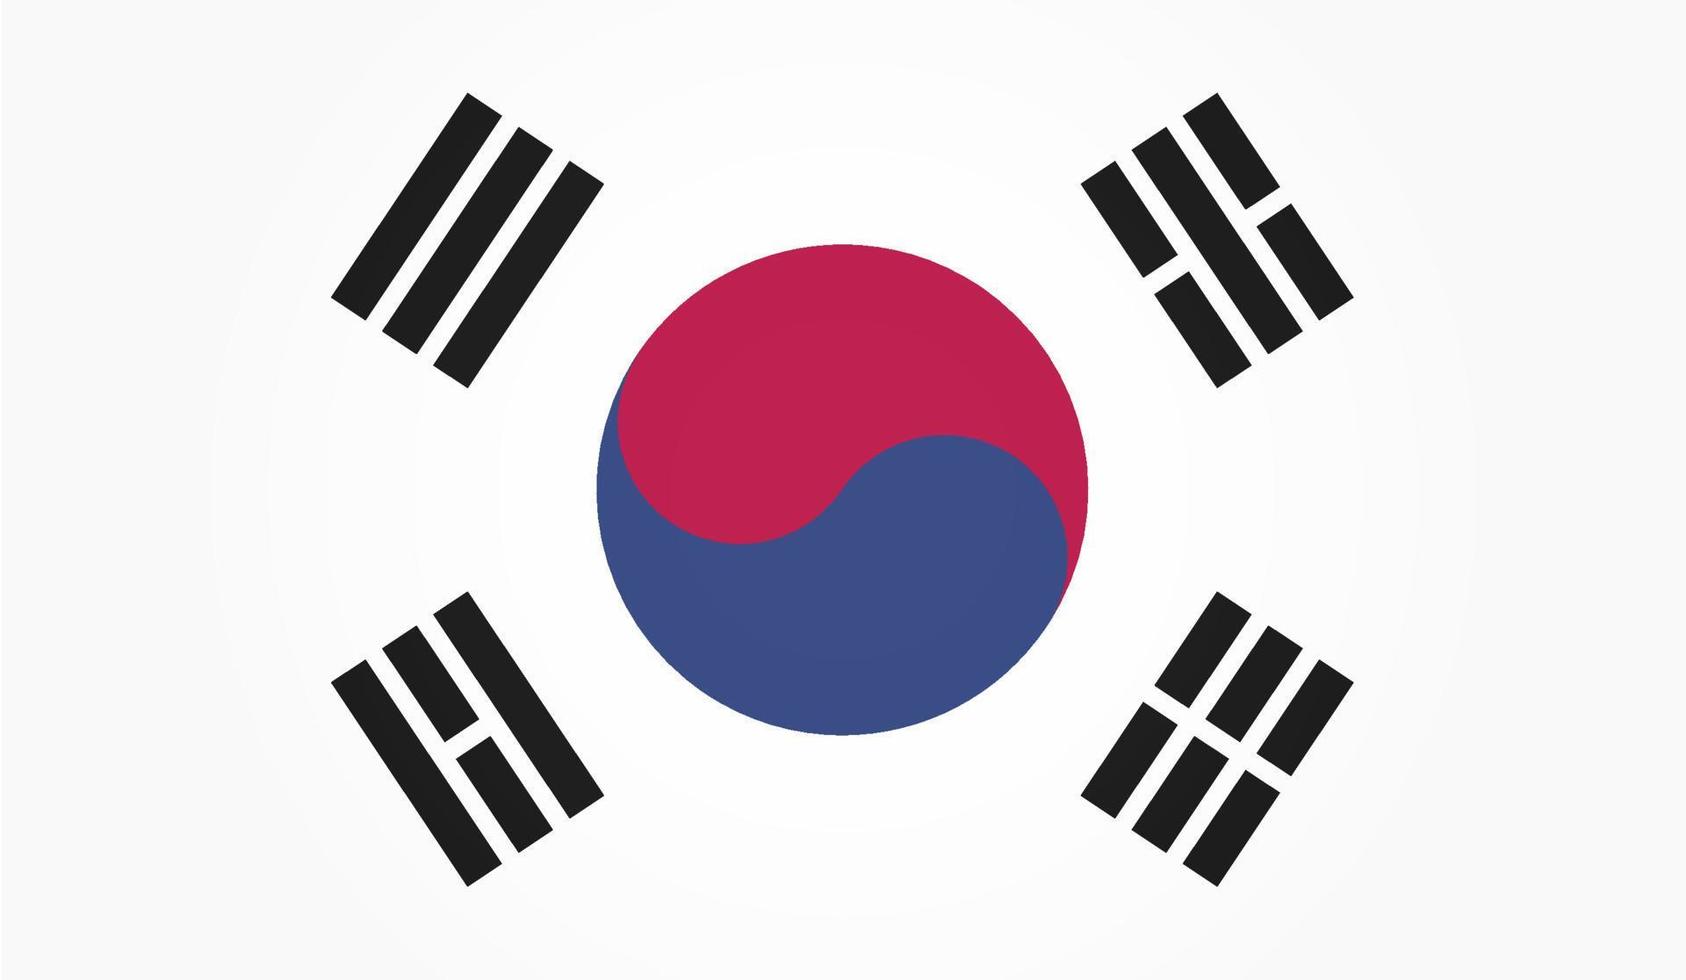 Flag of South Korea. White background. Vector illustration. EPS 10